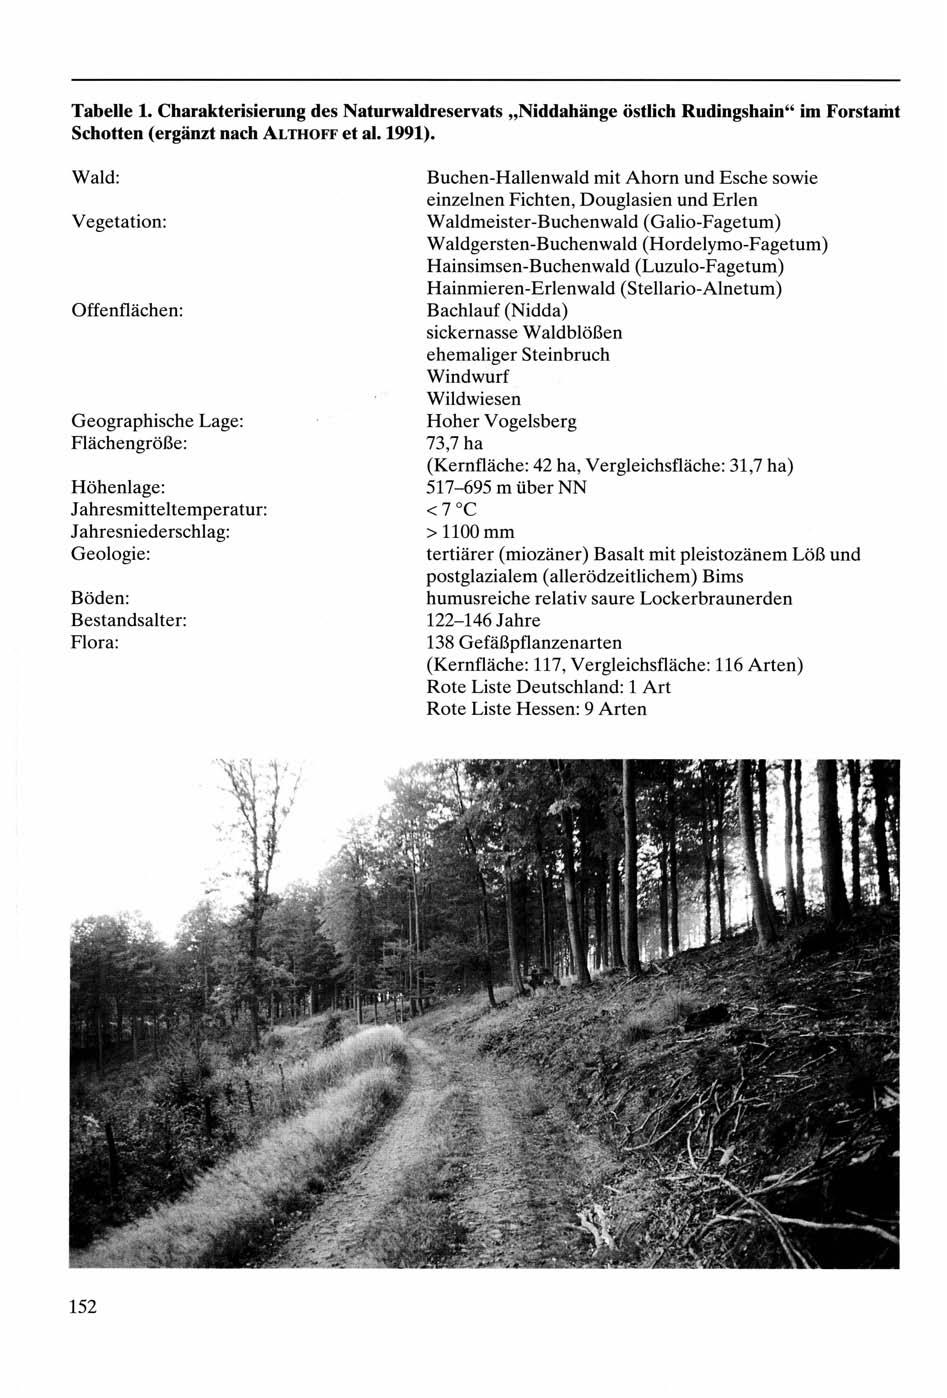 Tabelle 1. Charakterisierung des Naturwaldreservats "Niddahänge östlich Rudingshain" im Forstamt Schotten (ergänzt nach ALTHOFF et al.1991).